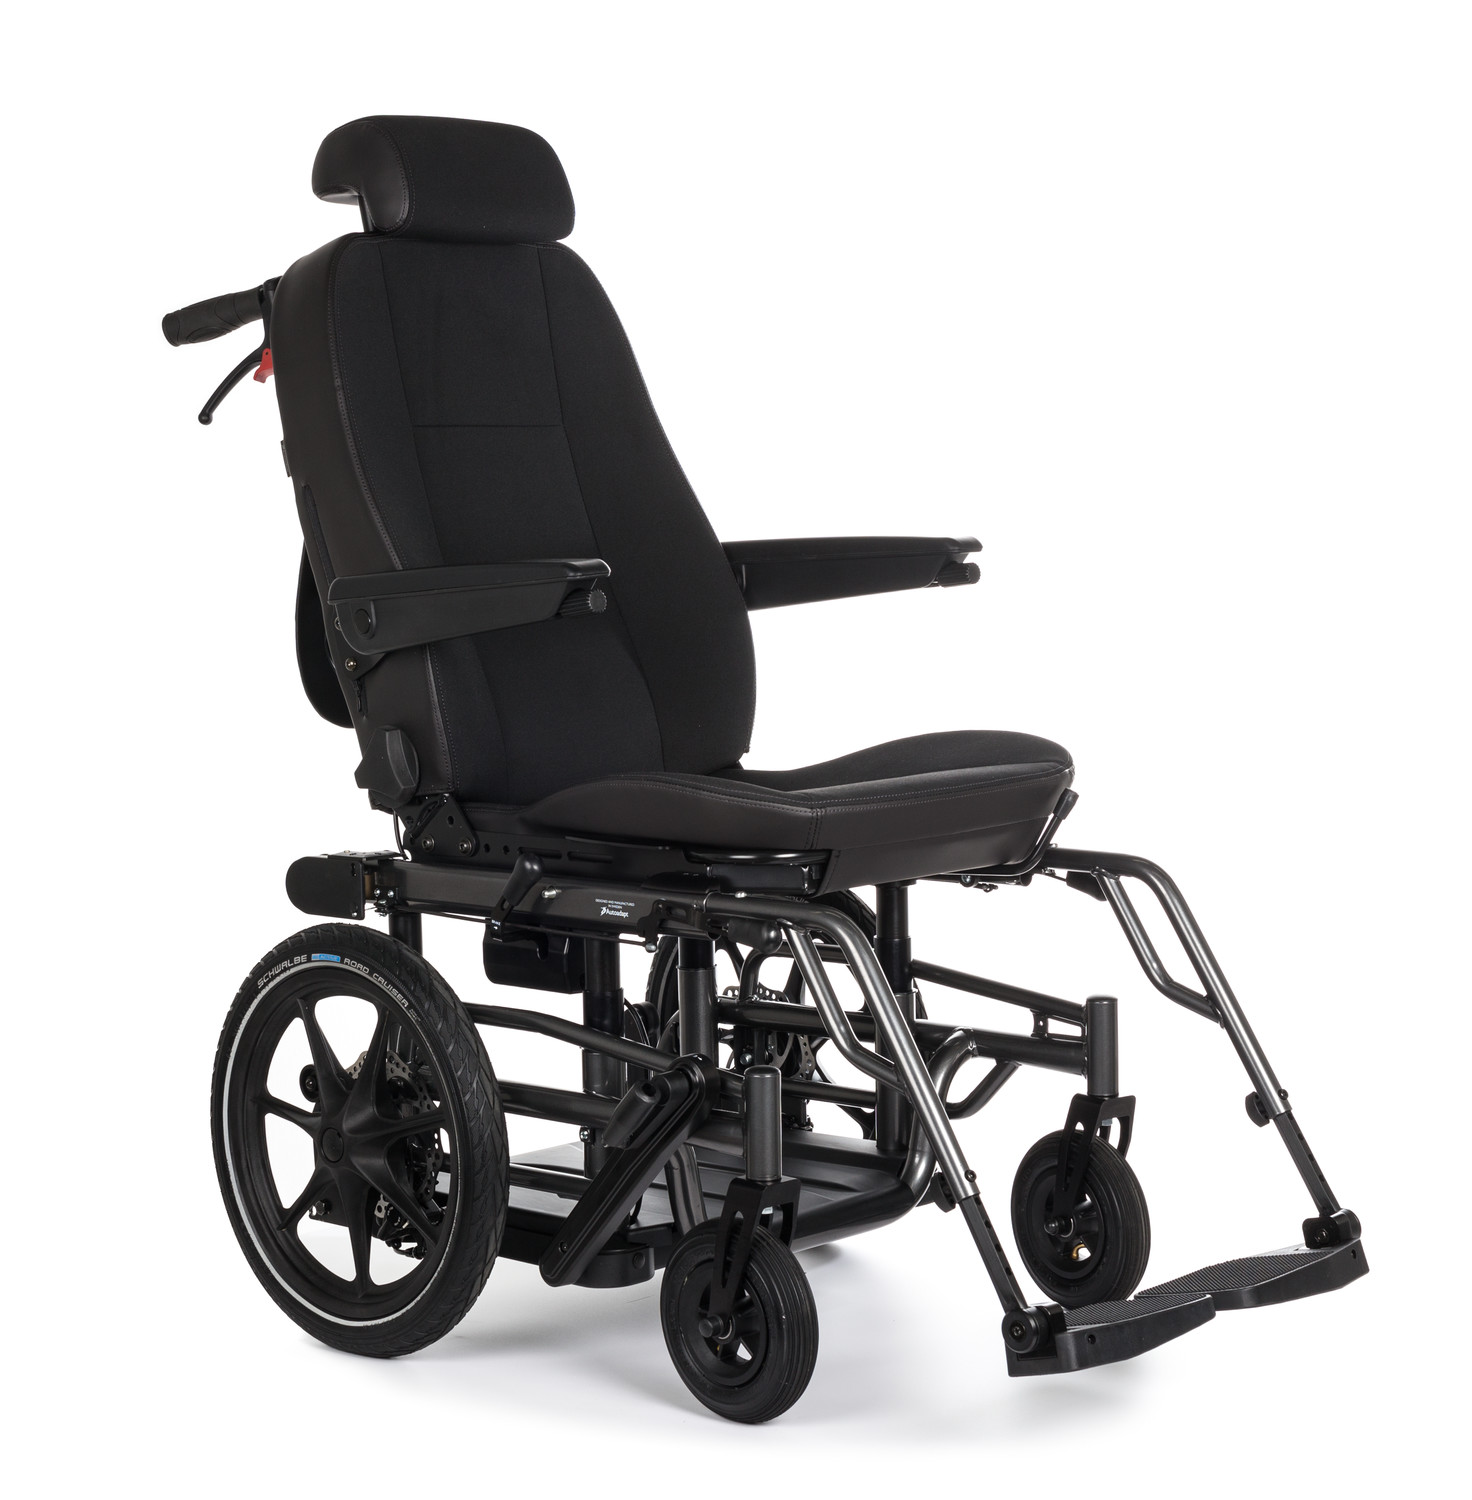 Sièges et accessoires pour Carony embases pivotantes et fauteuil roulant